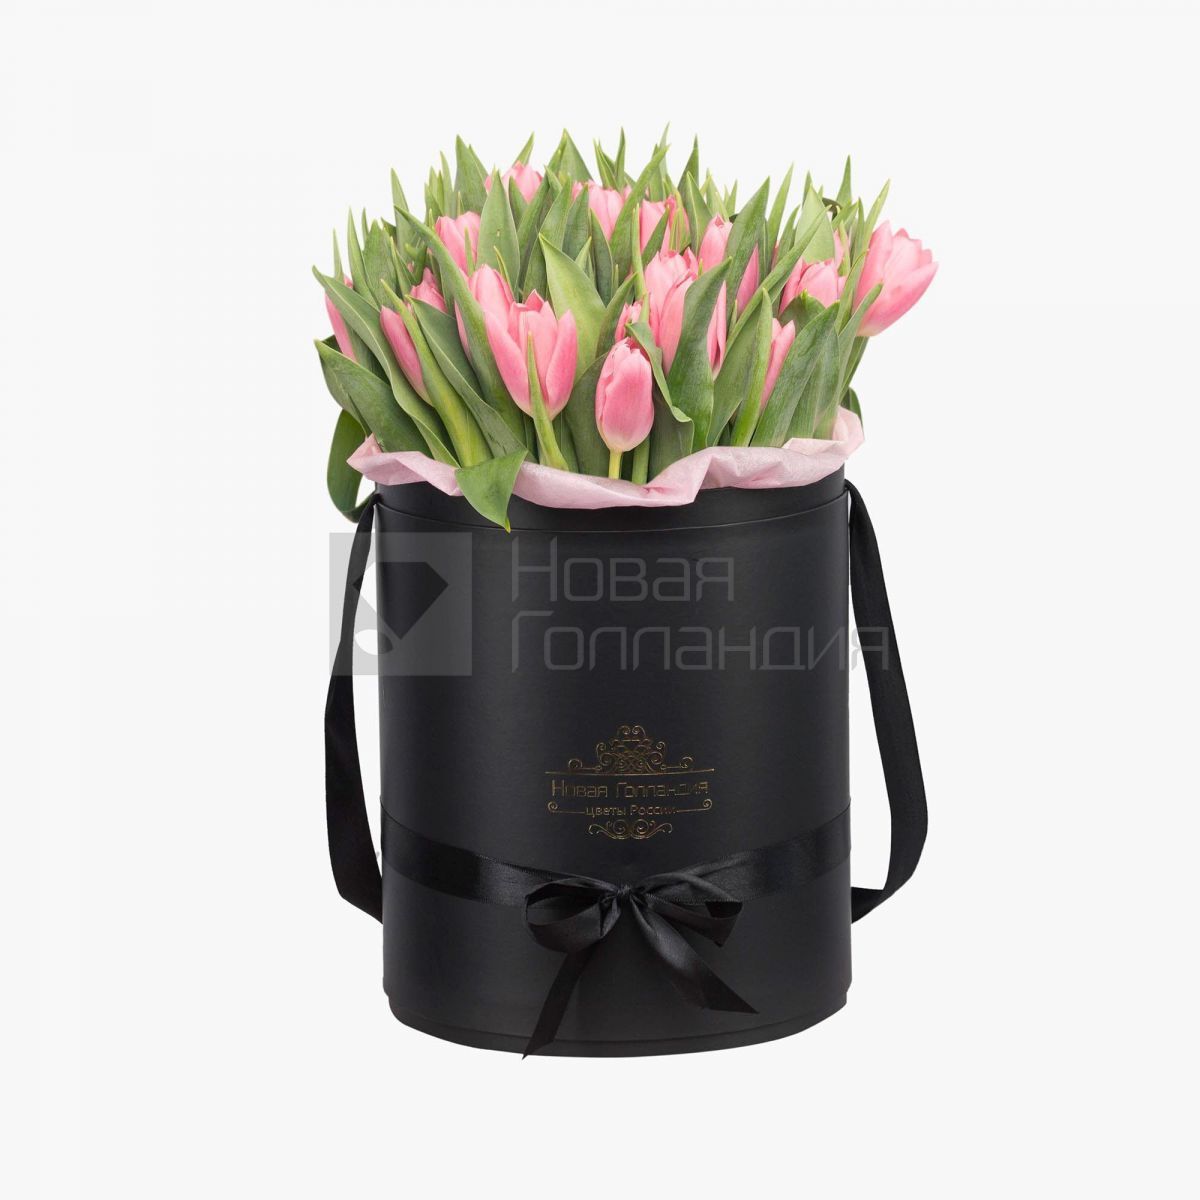 59 розовых тюльпанов в большой черной шляпной коробке №530